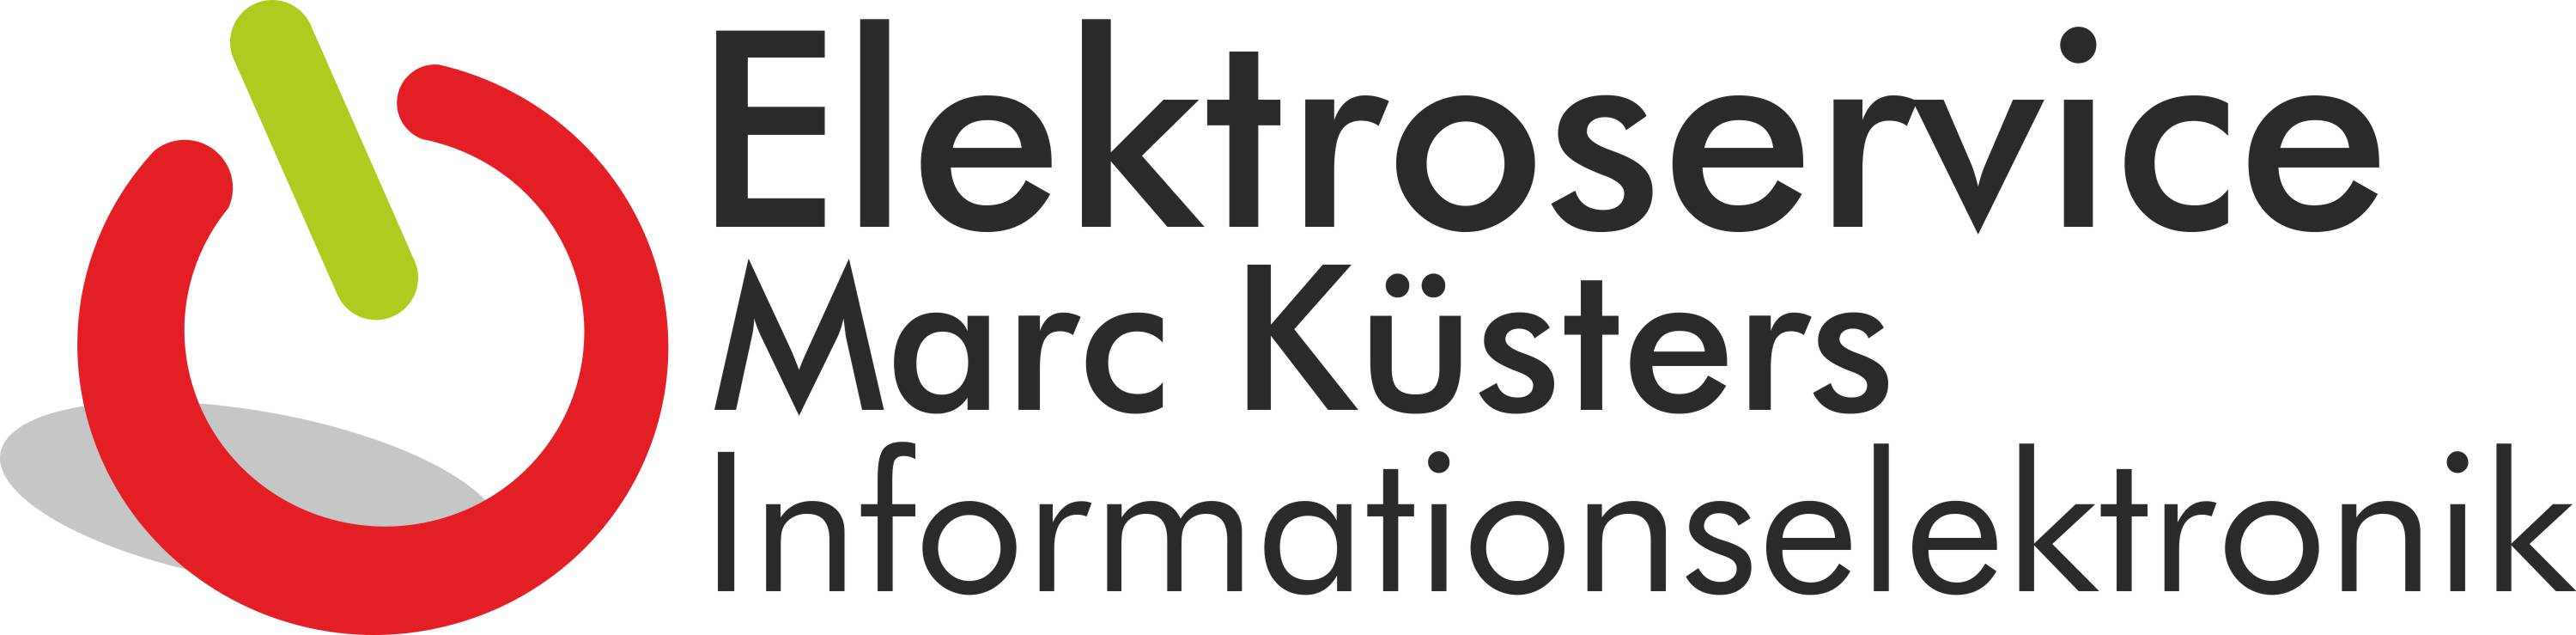 Elektroservice Marc Küsters in Bocholt